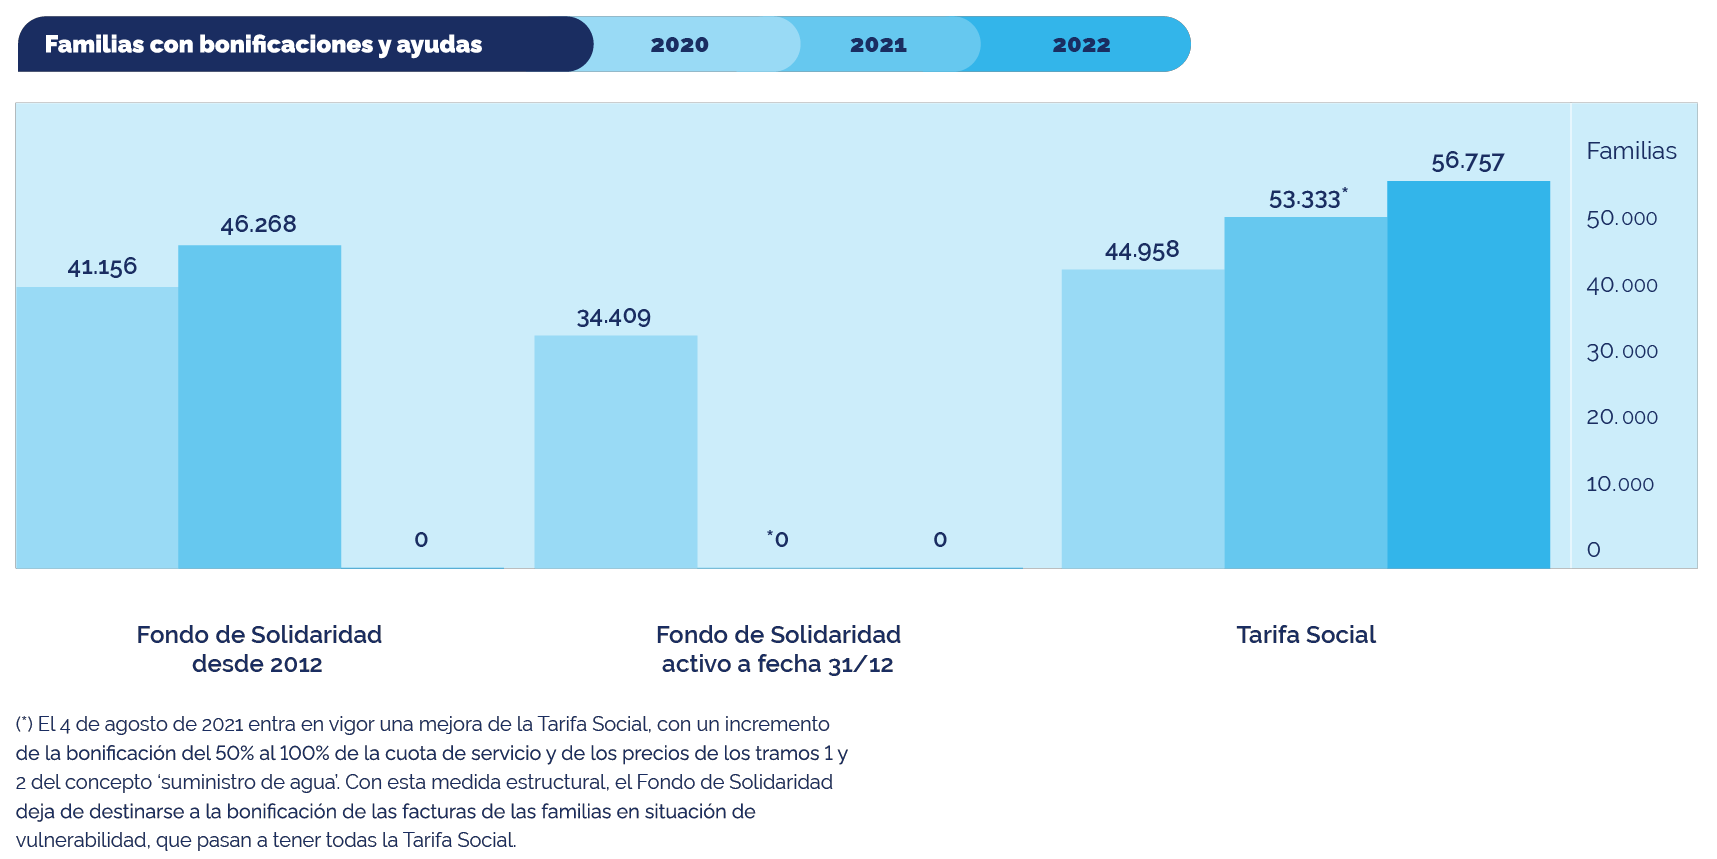 Infografía familias con bonificaciones y ayudas de 2020 a 2022